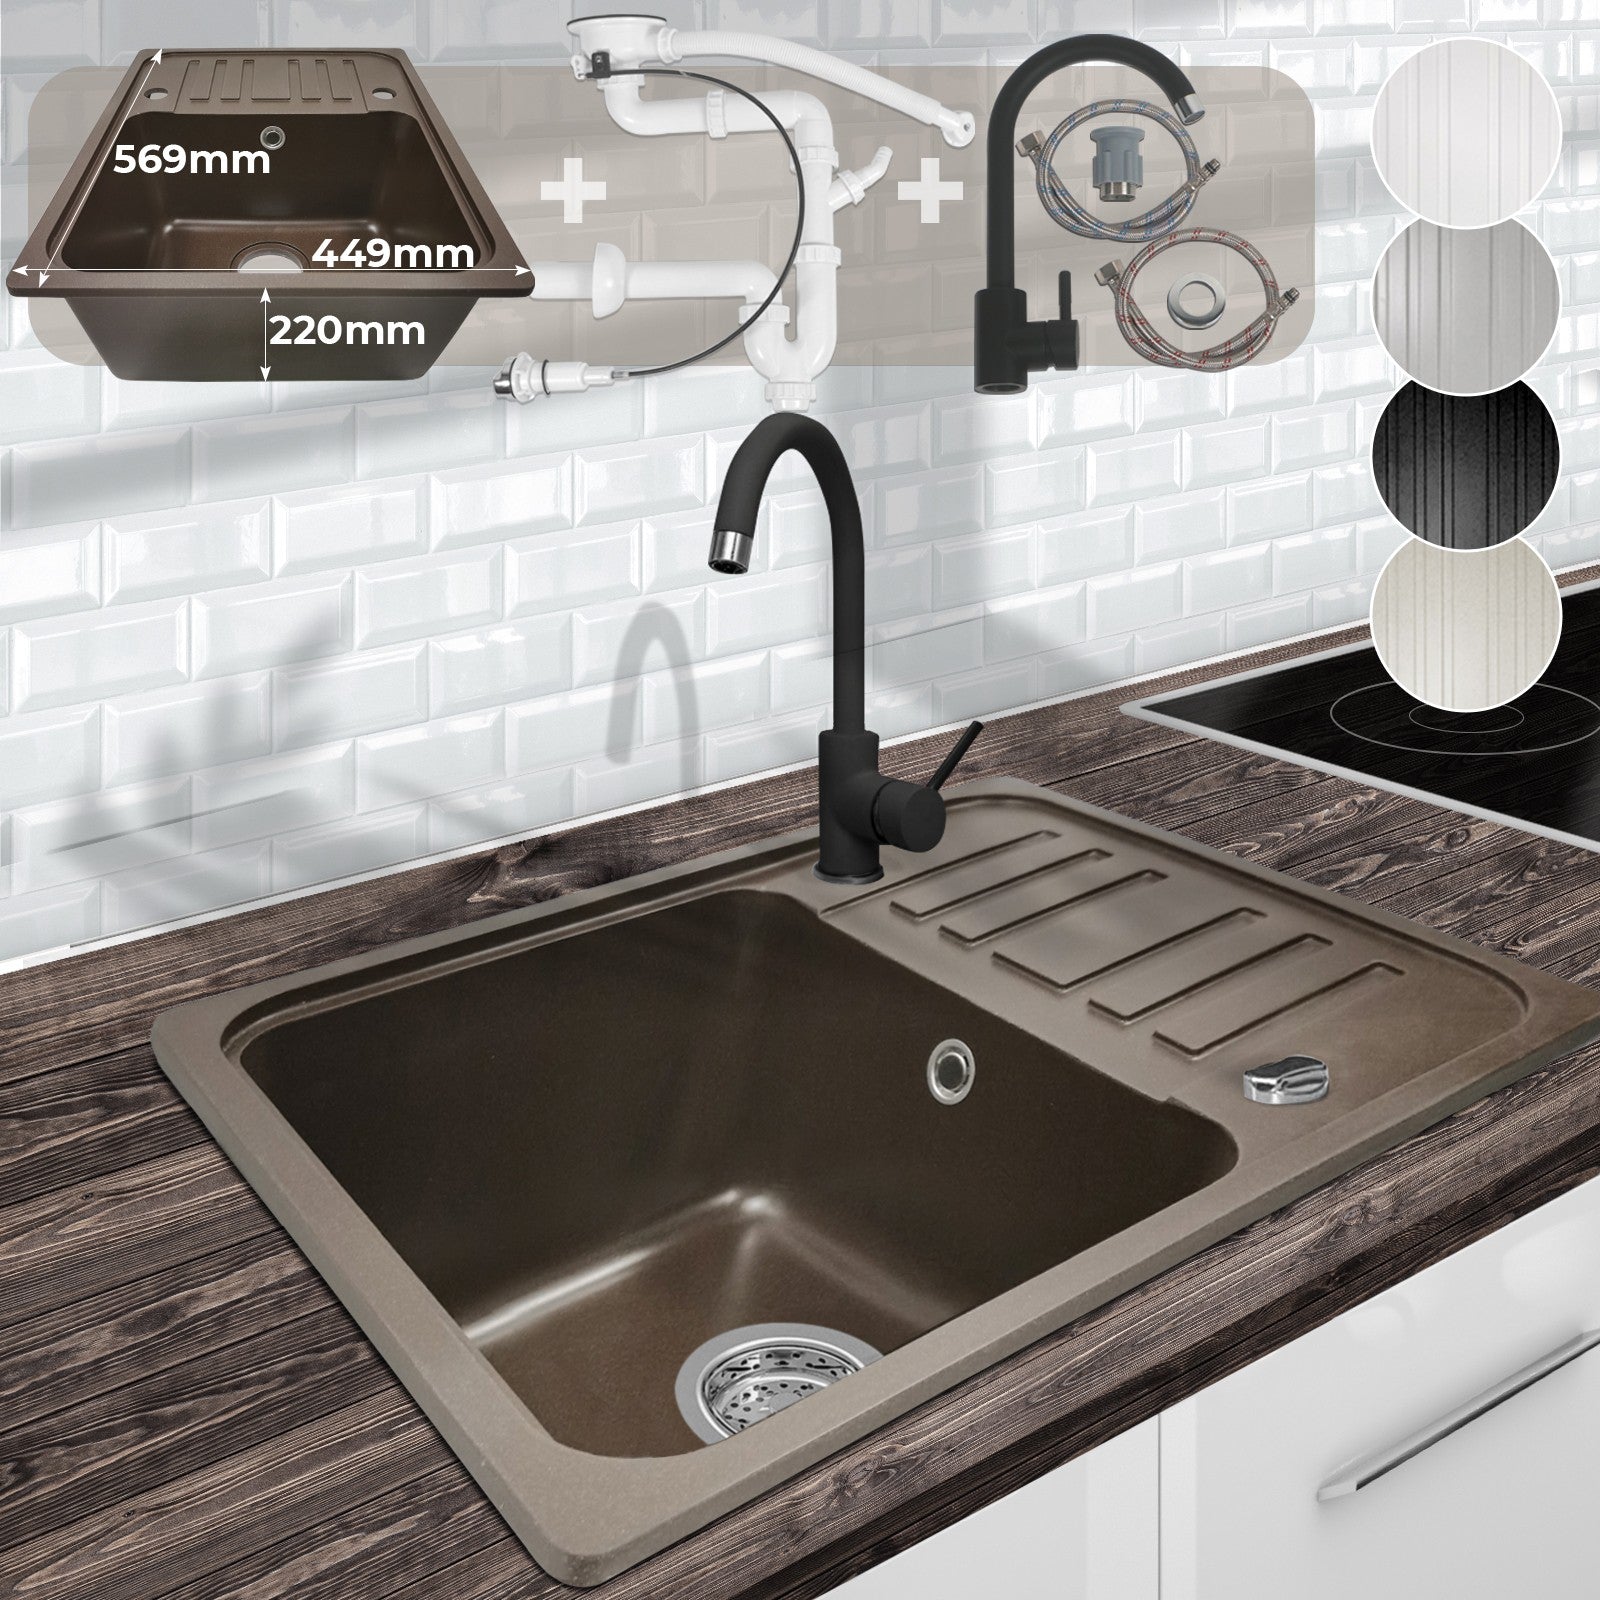 5: Køkkenvask med afløbsbakke, vandhane og vendbart afløbgranit, 569x220x449 mm, brun